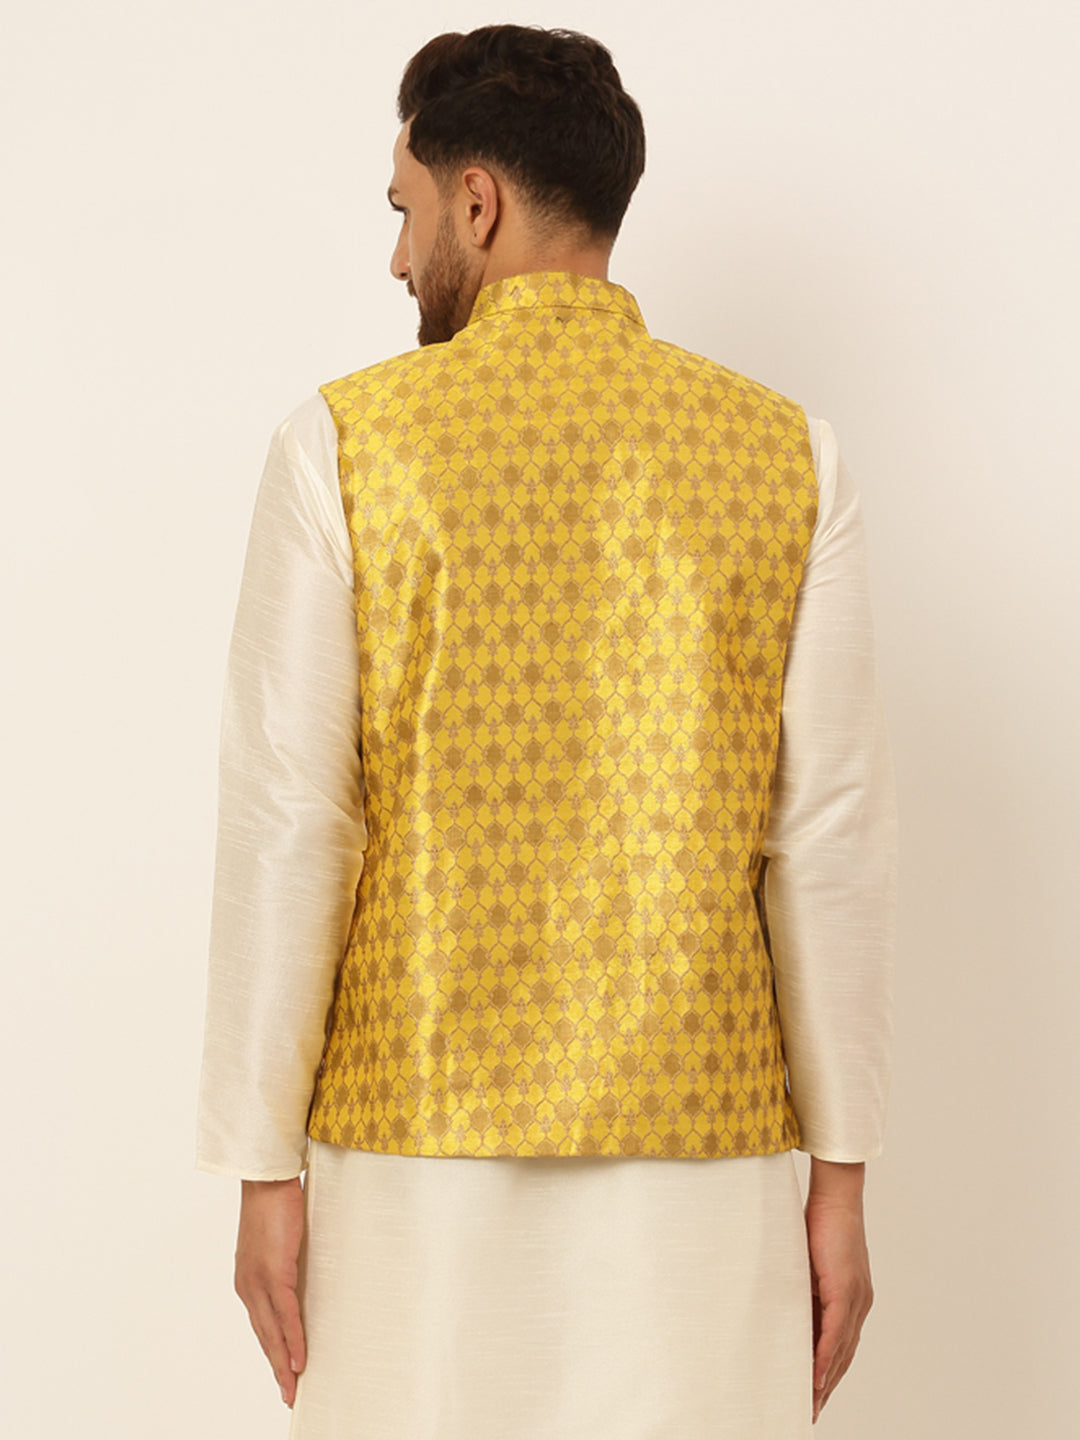 Jompers Men's Woven Design Waistcoat - Mustard - Distacart